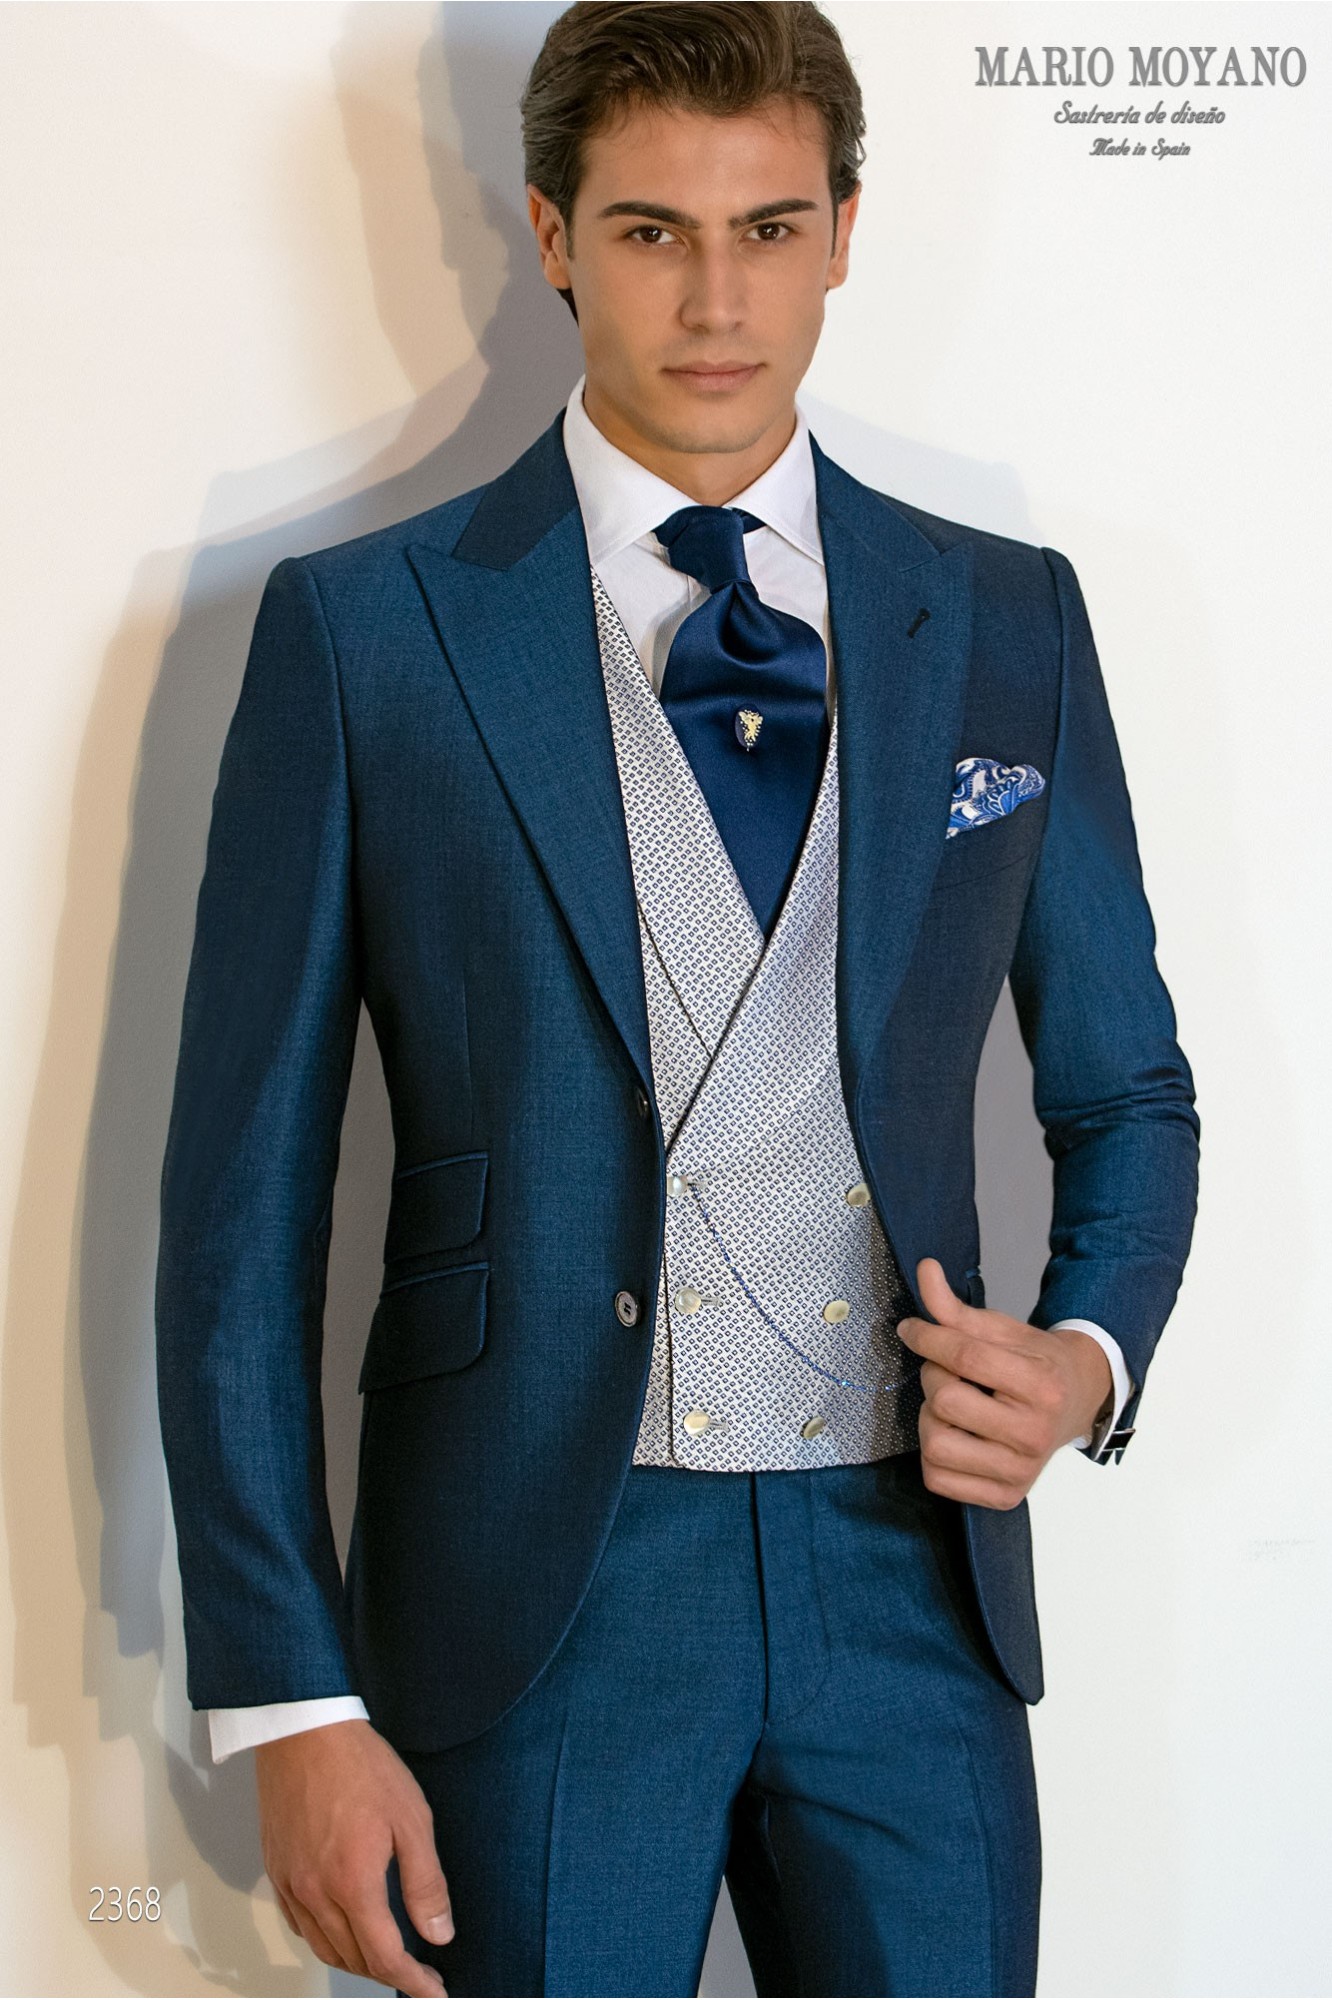 Blauer Hochzeitsanzug aus reiner Wolle und Mohair Modell 2368 Mario Moyano